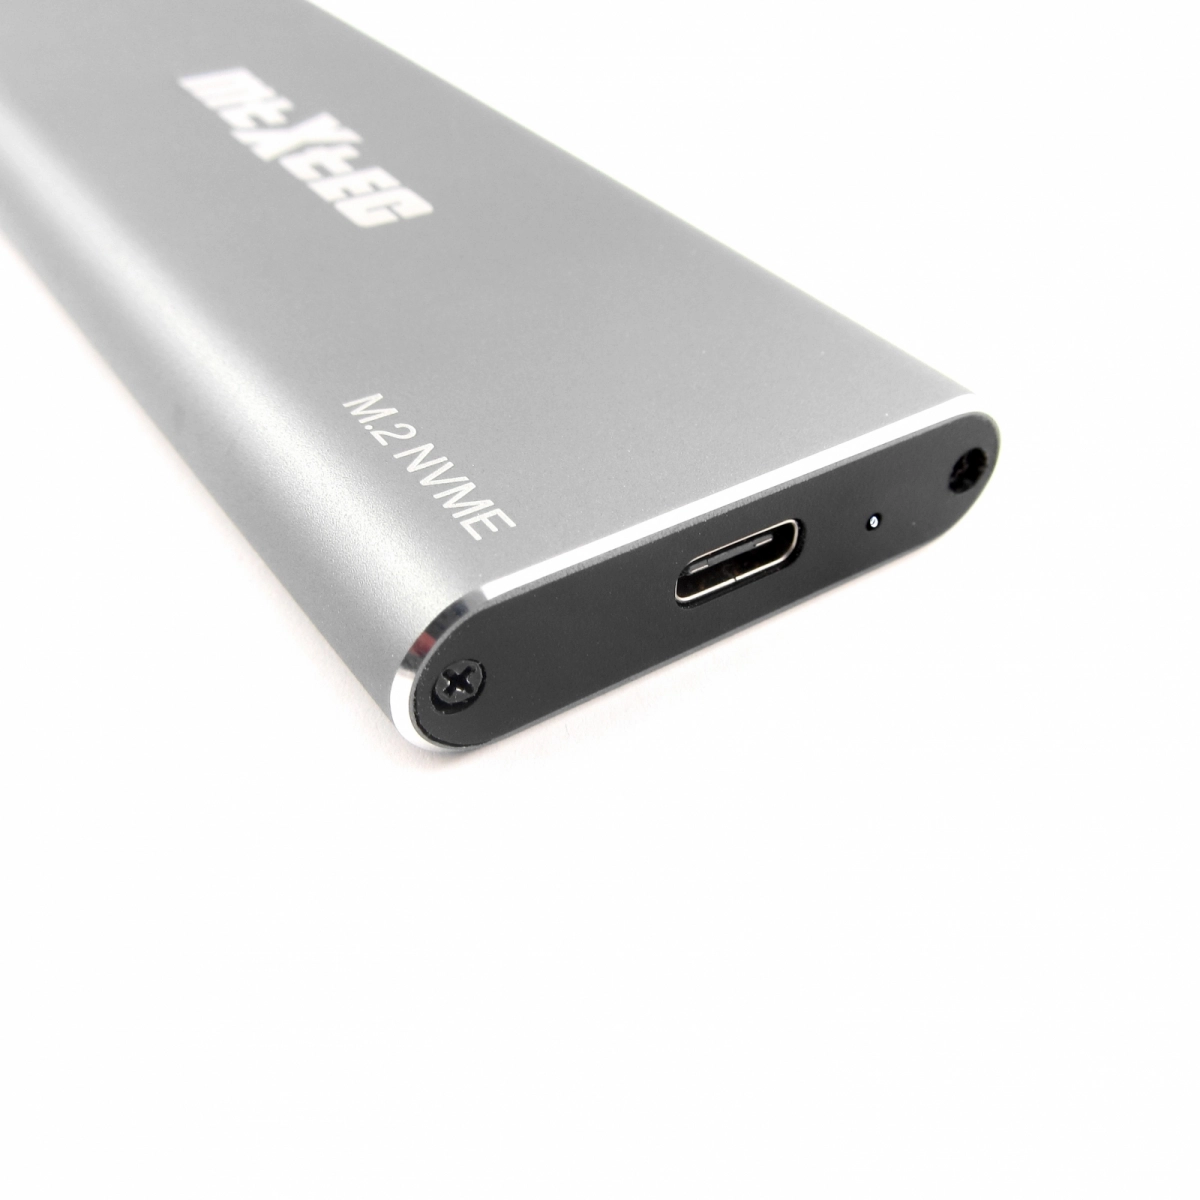 MTXtec externes Alu-Gehäuse für m.2 SSD mit NVMe Schnittstelle zu USB 3.1, silber